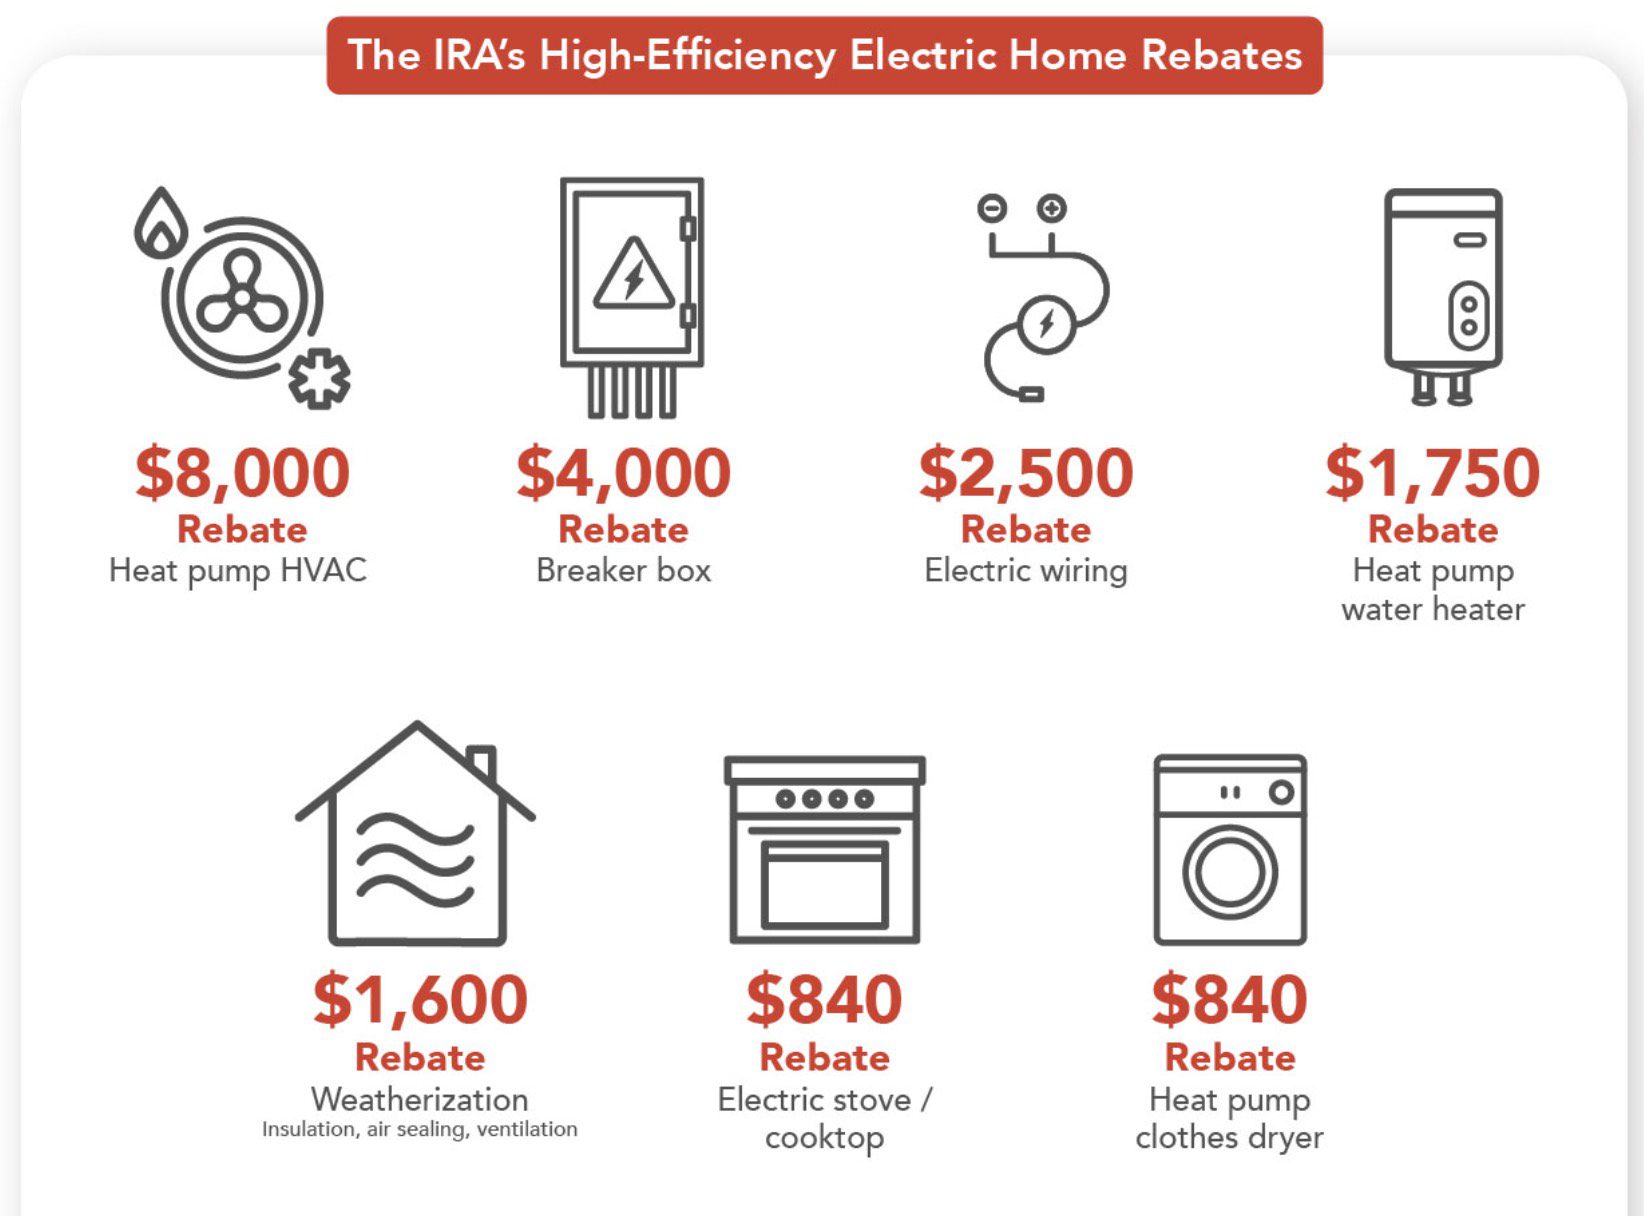 bpa-journal-understanding-the-high-efficiency-electric-home-rebate